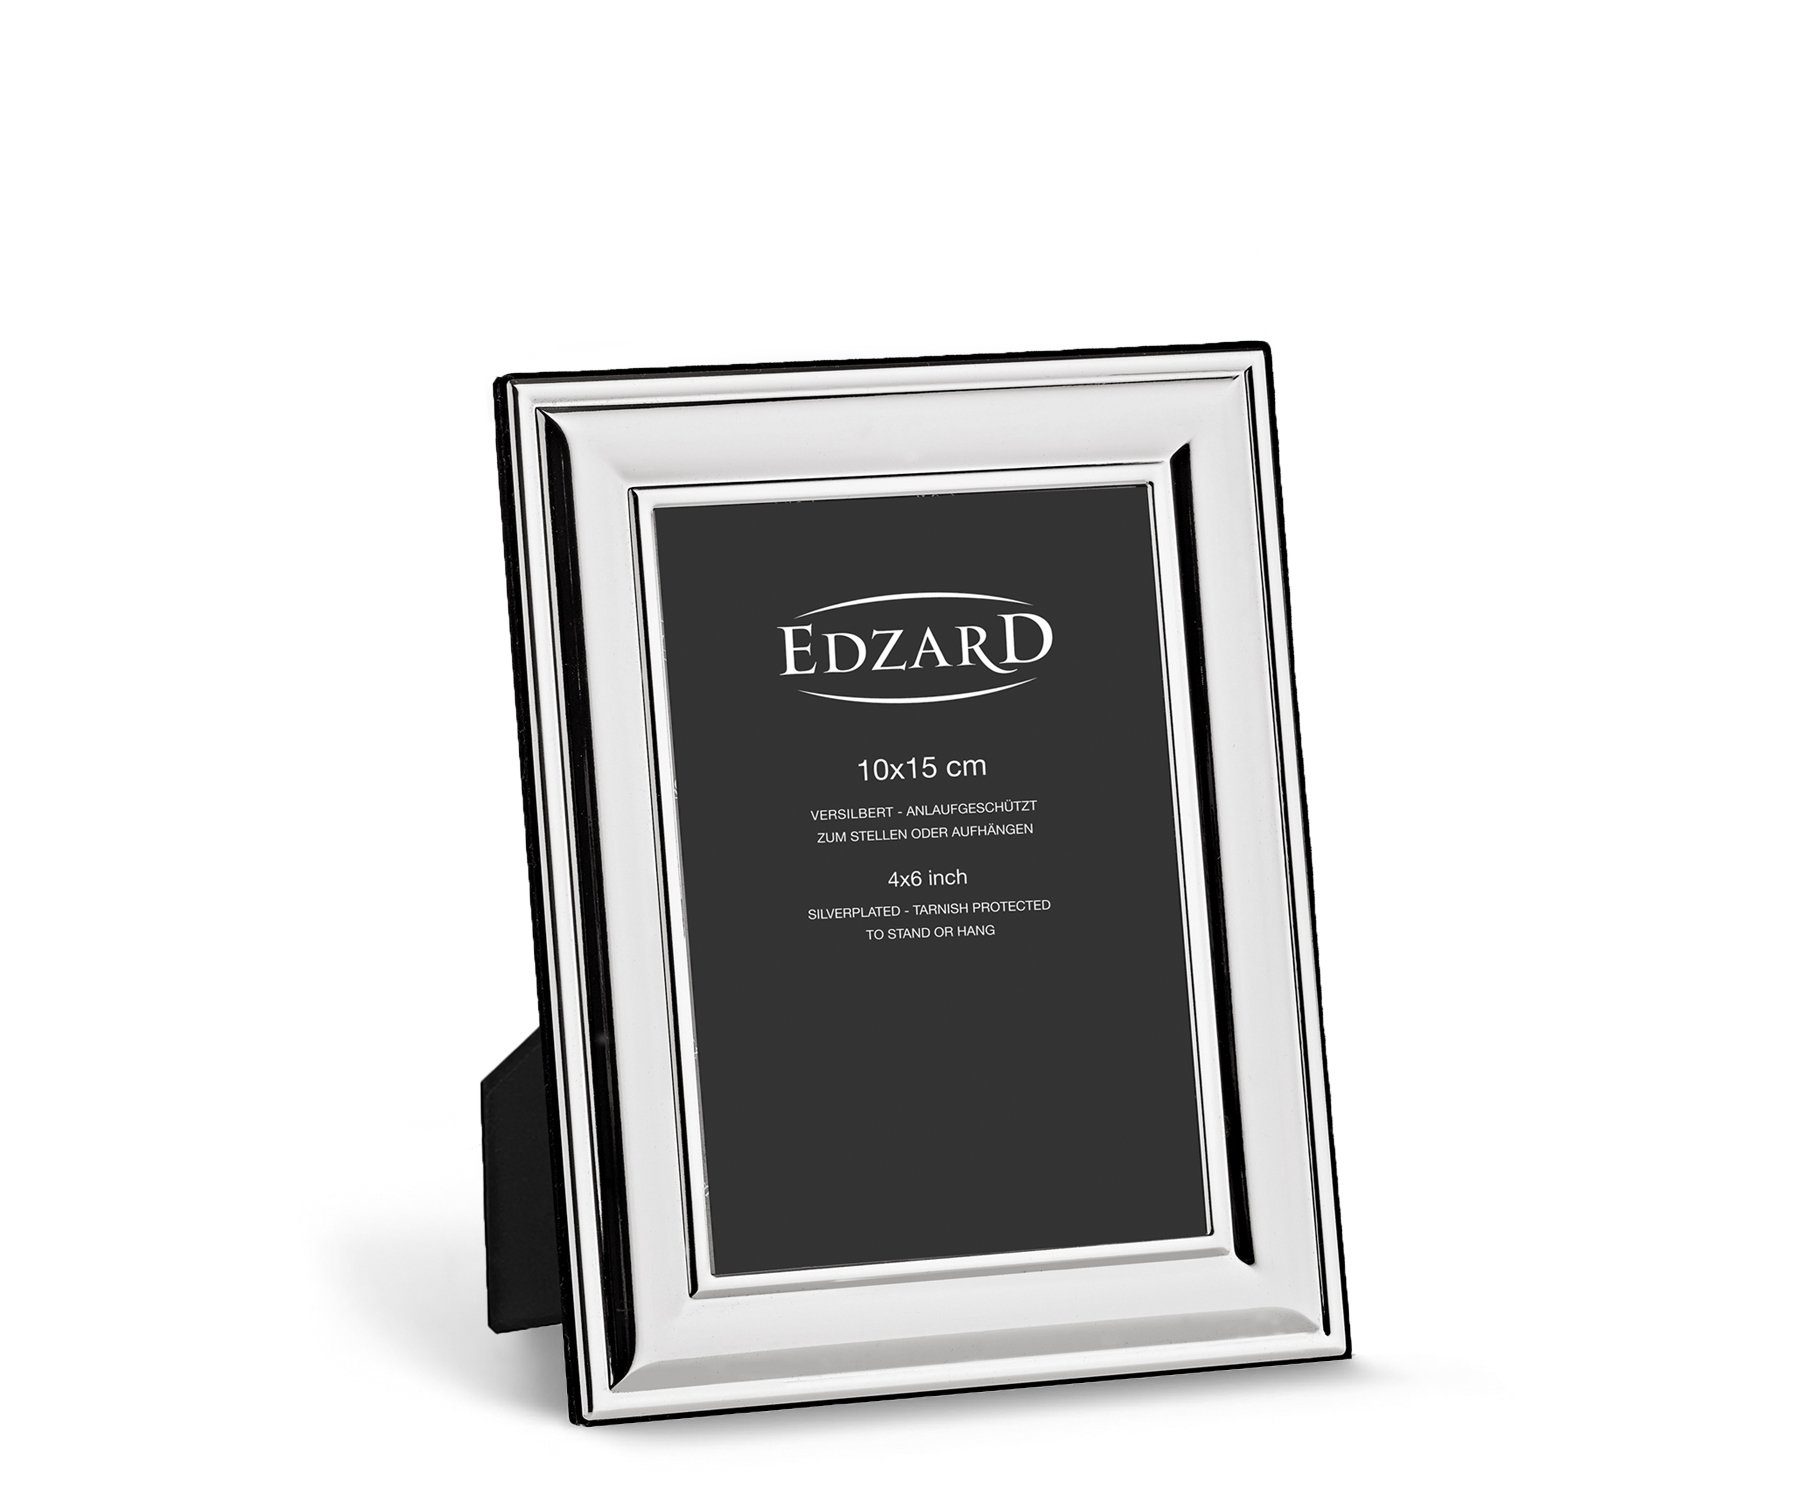 EDZARD Bilderrahmen Sunset, versilbert und anlaufgeschützt, für 10x15 cm Bilder – Fotorahmen